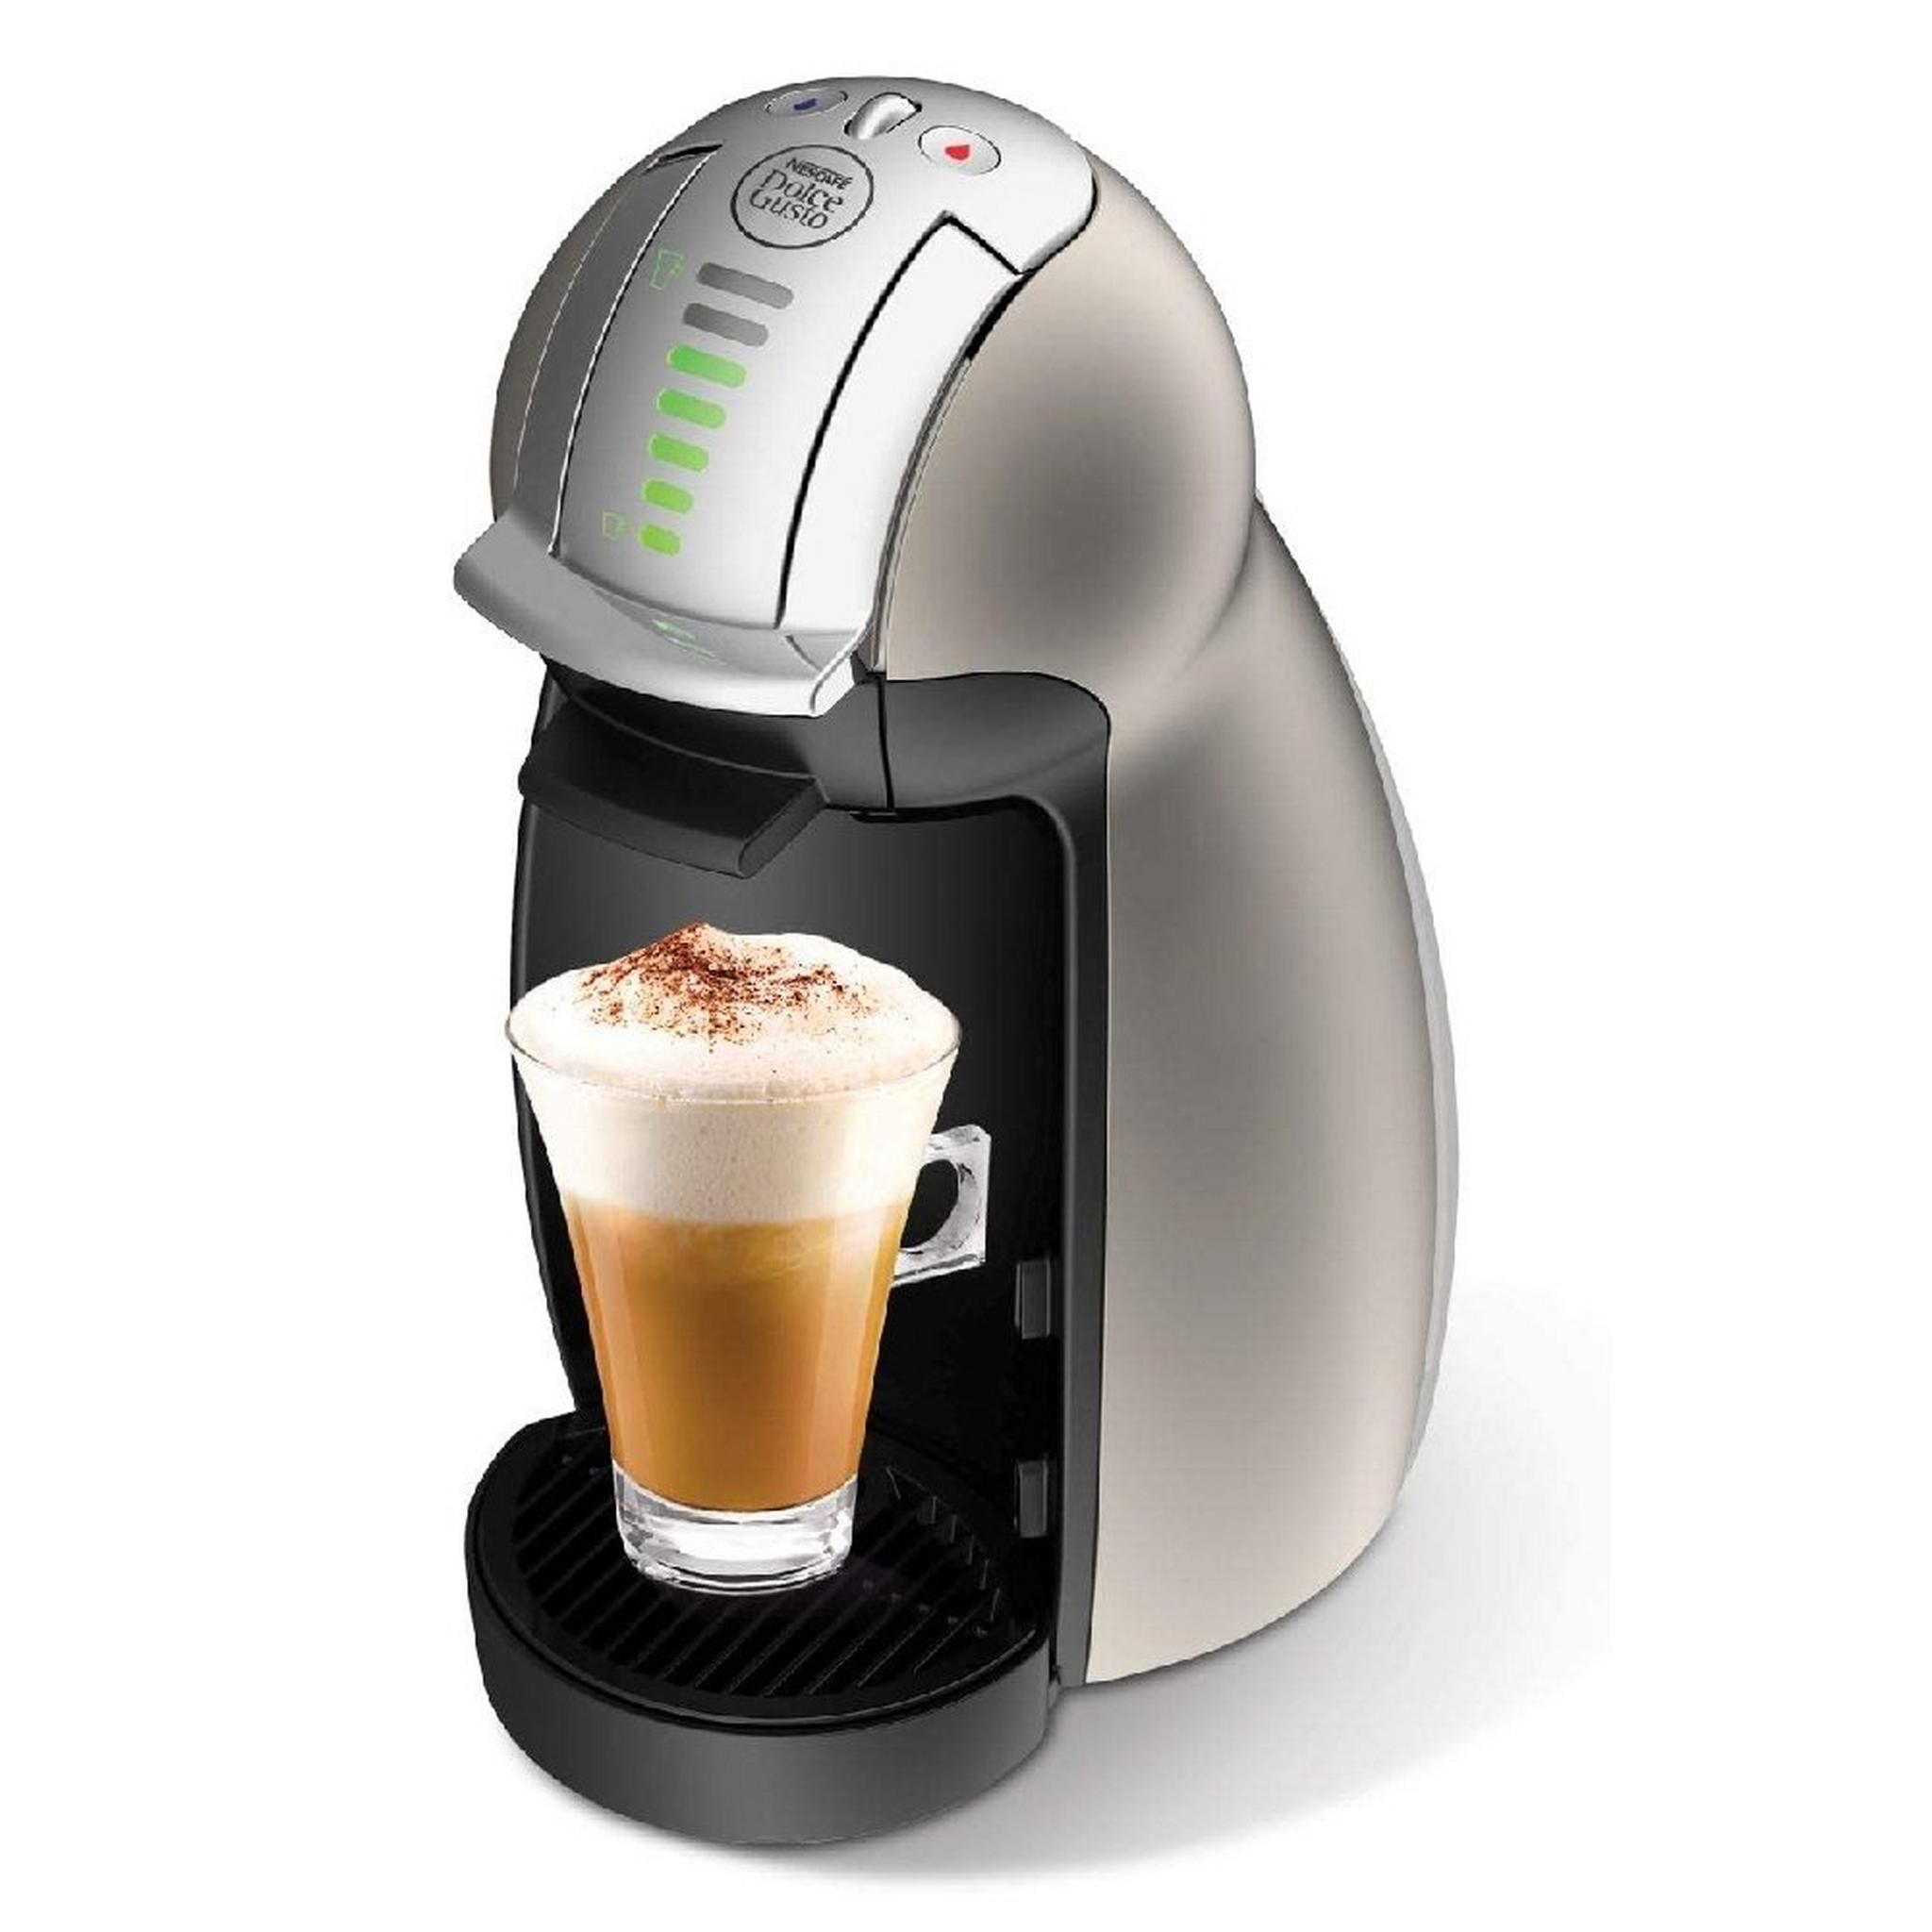 ماكينة صنع القهوة جوستو جينيو  من دولتشي 2 كبسولة، 1500 واط، 1 لتر، EDG465.T - تيتانيوم